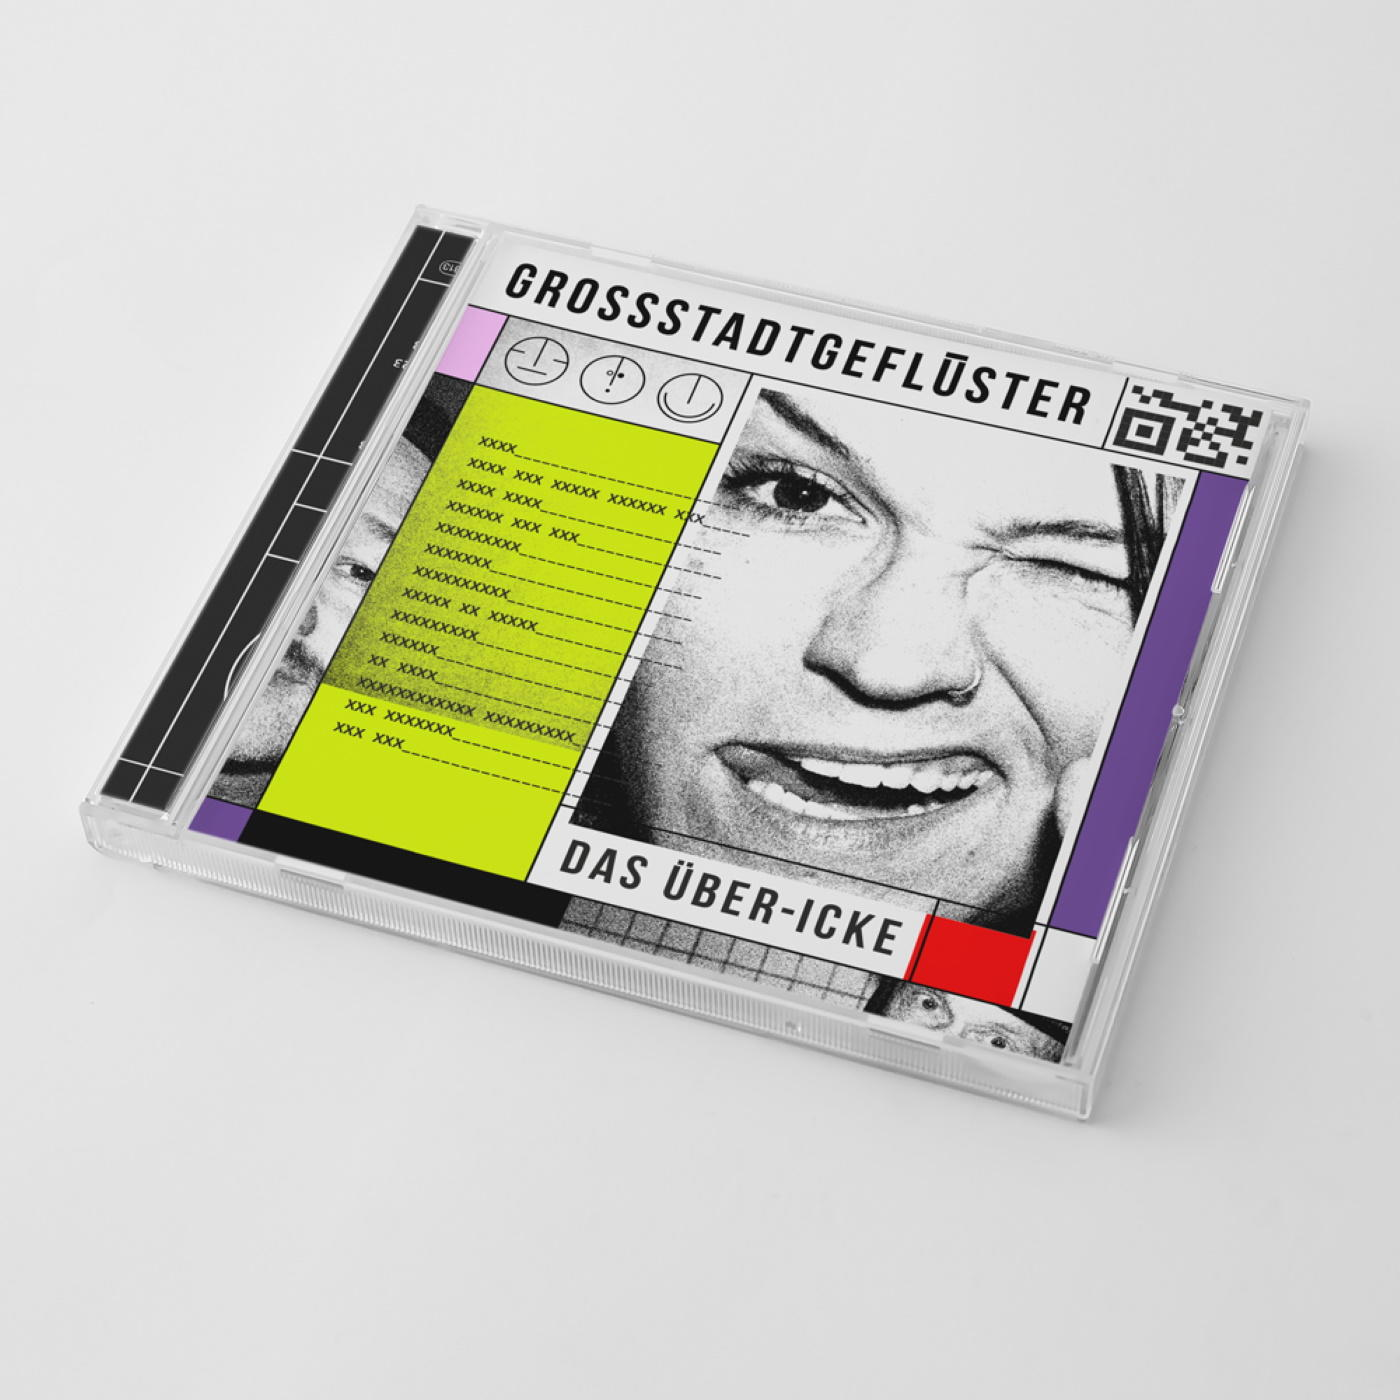 Grossstadtgeflüster - DAS - (CD) ÜBER-ICKE